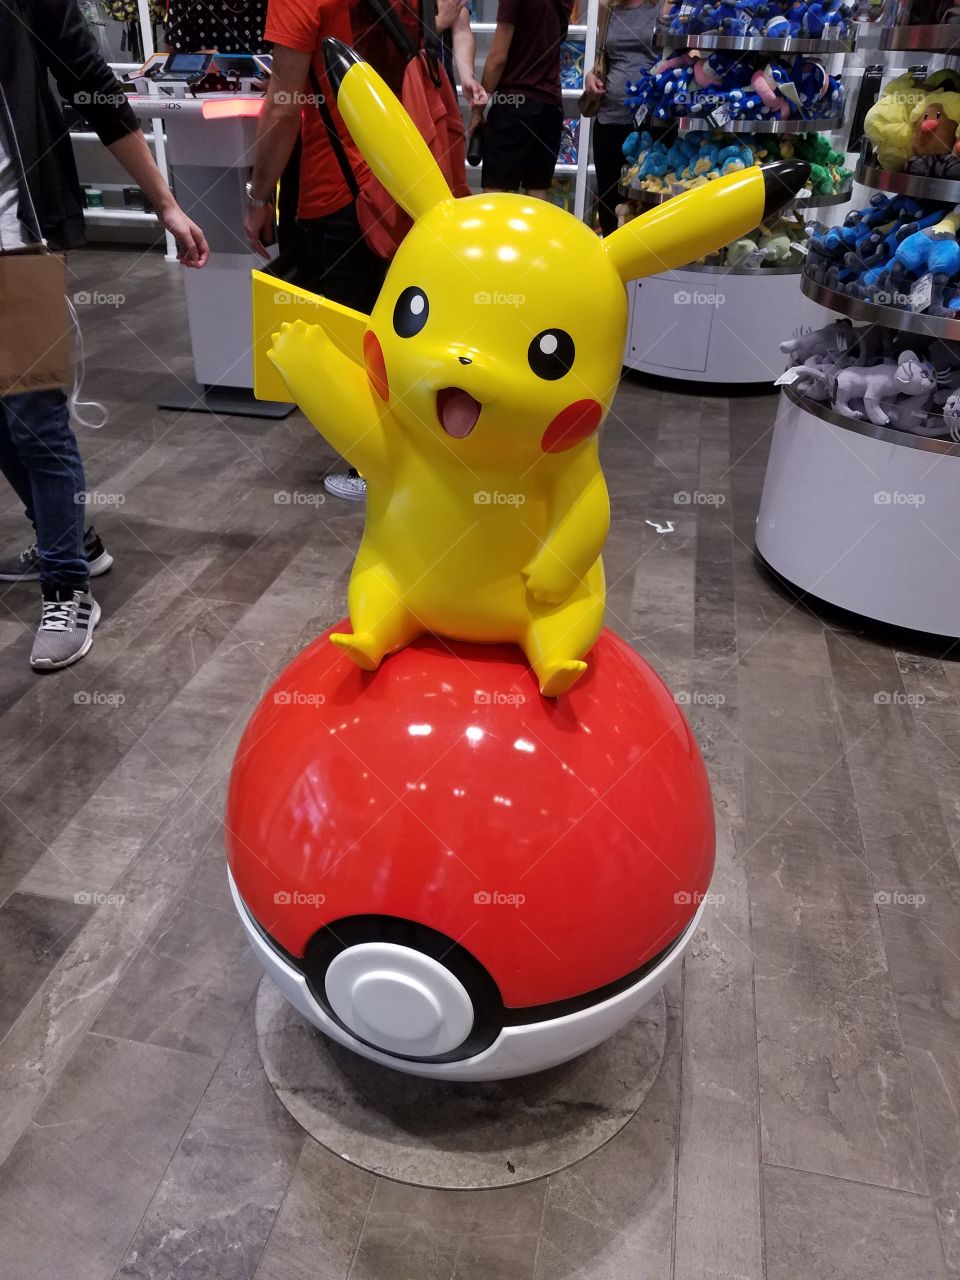 pikachu display at Nintendo ny